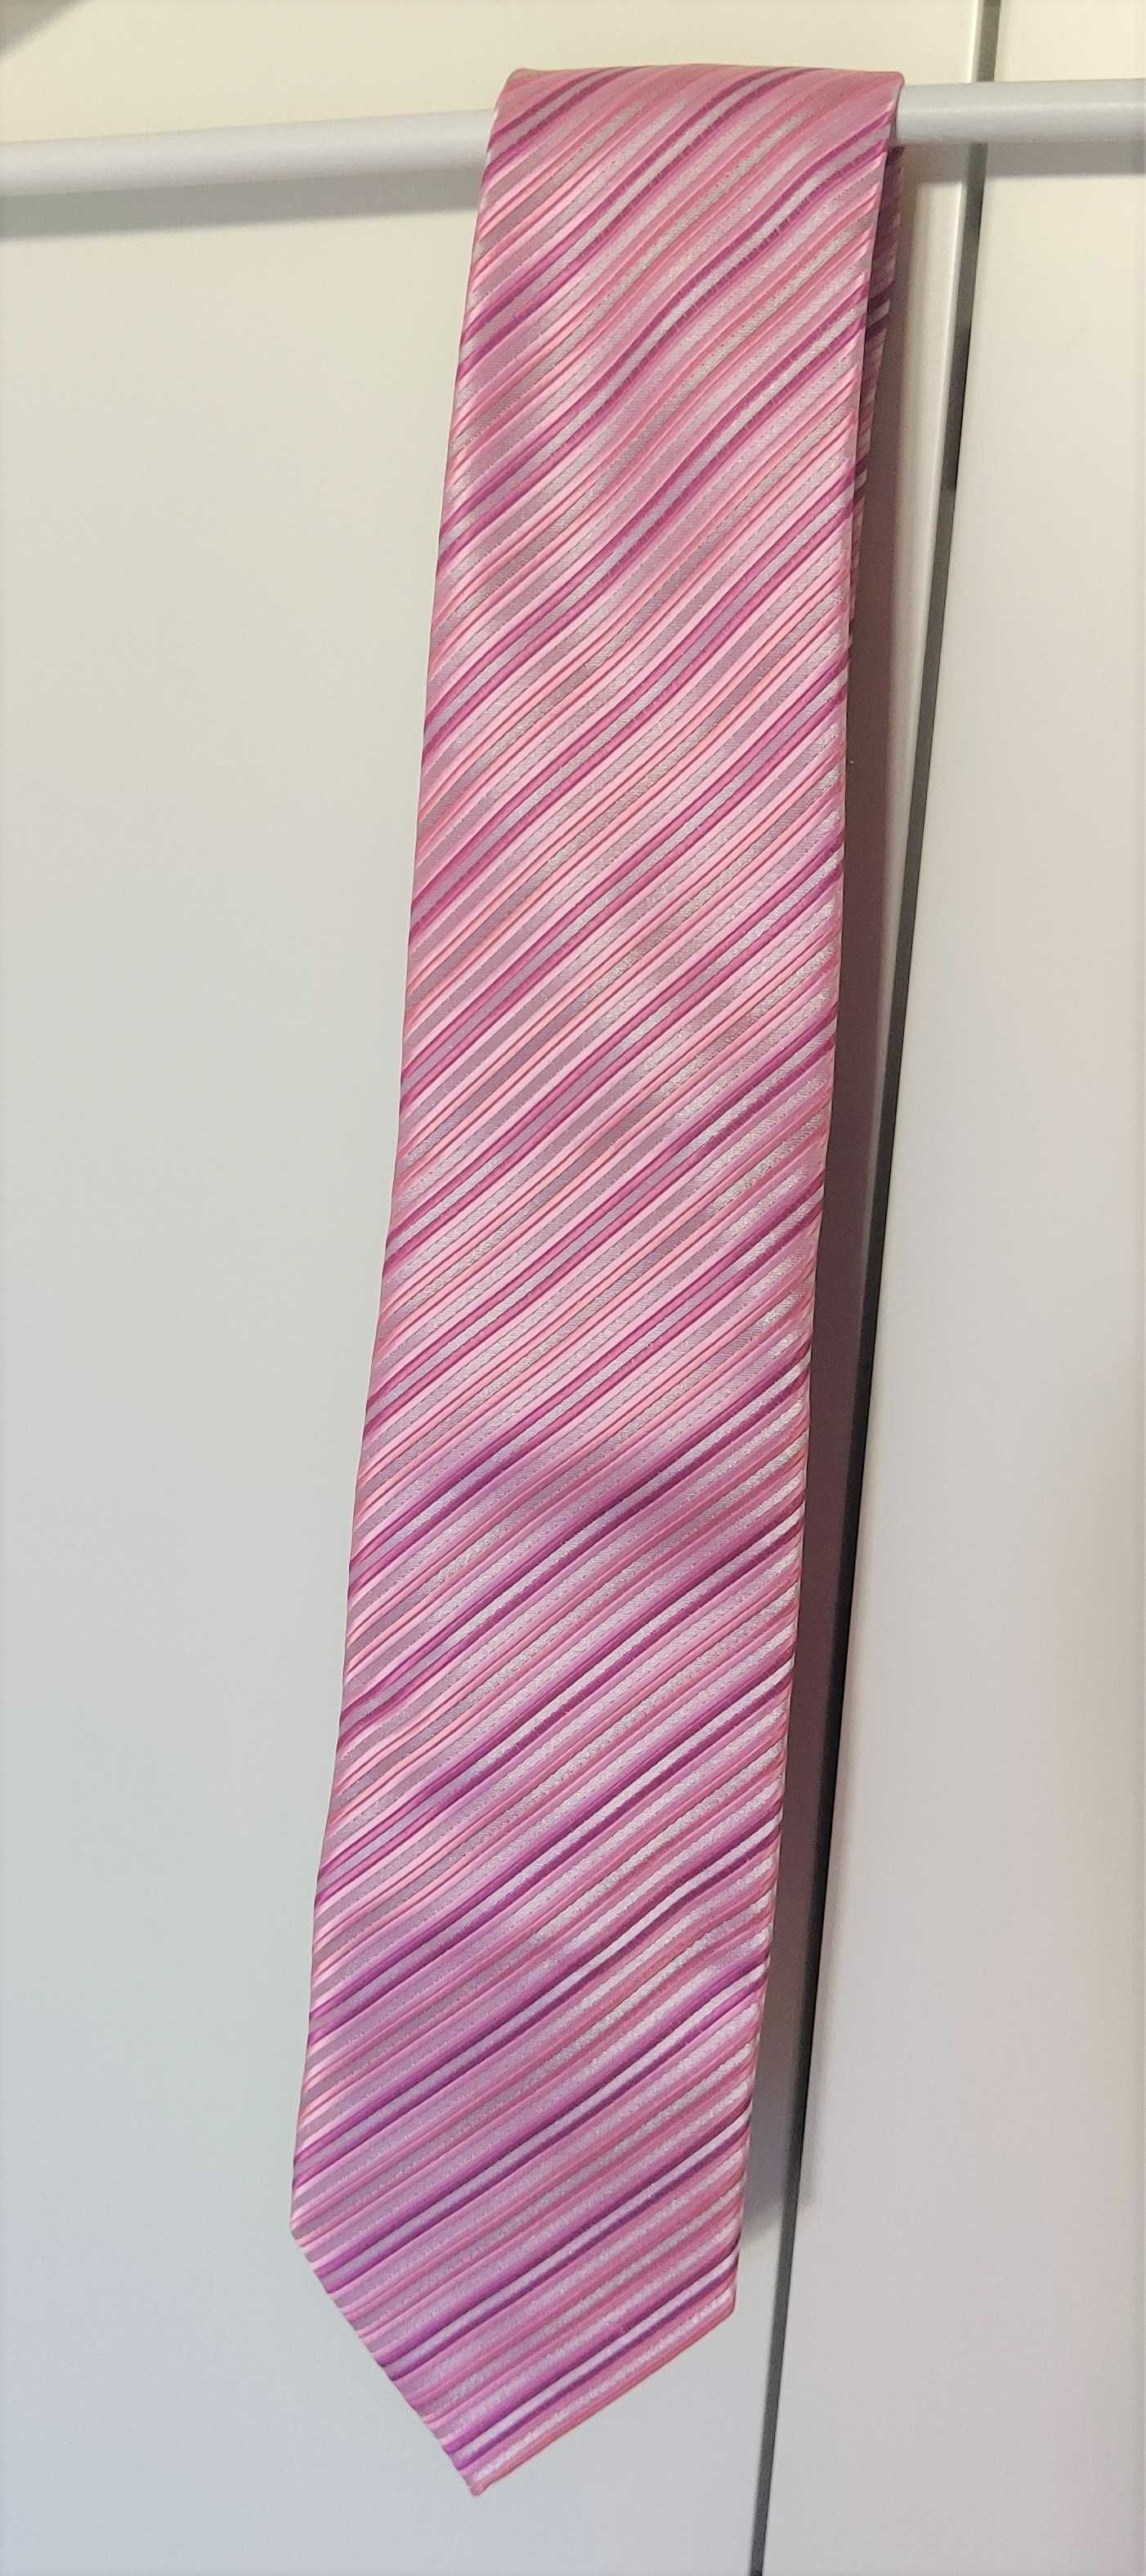 Żakardowy Krawat FRANCO FERUZZI różowy w paski